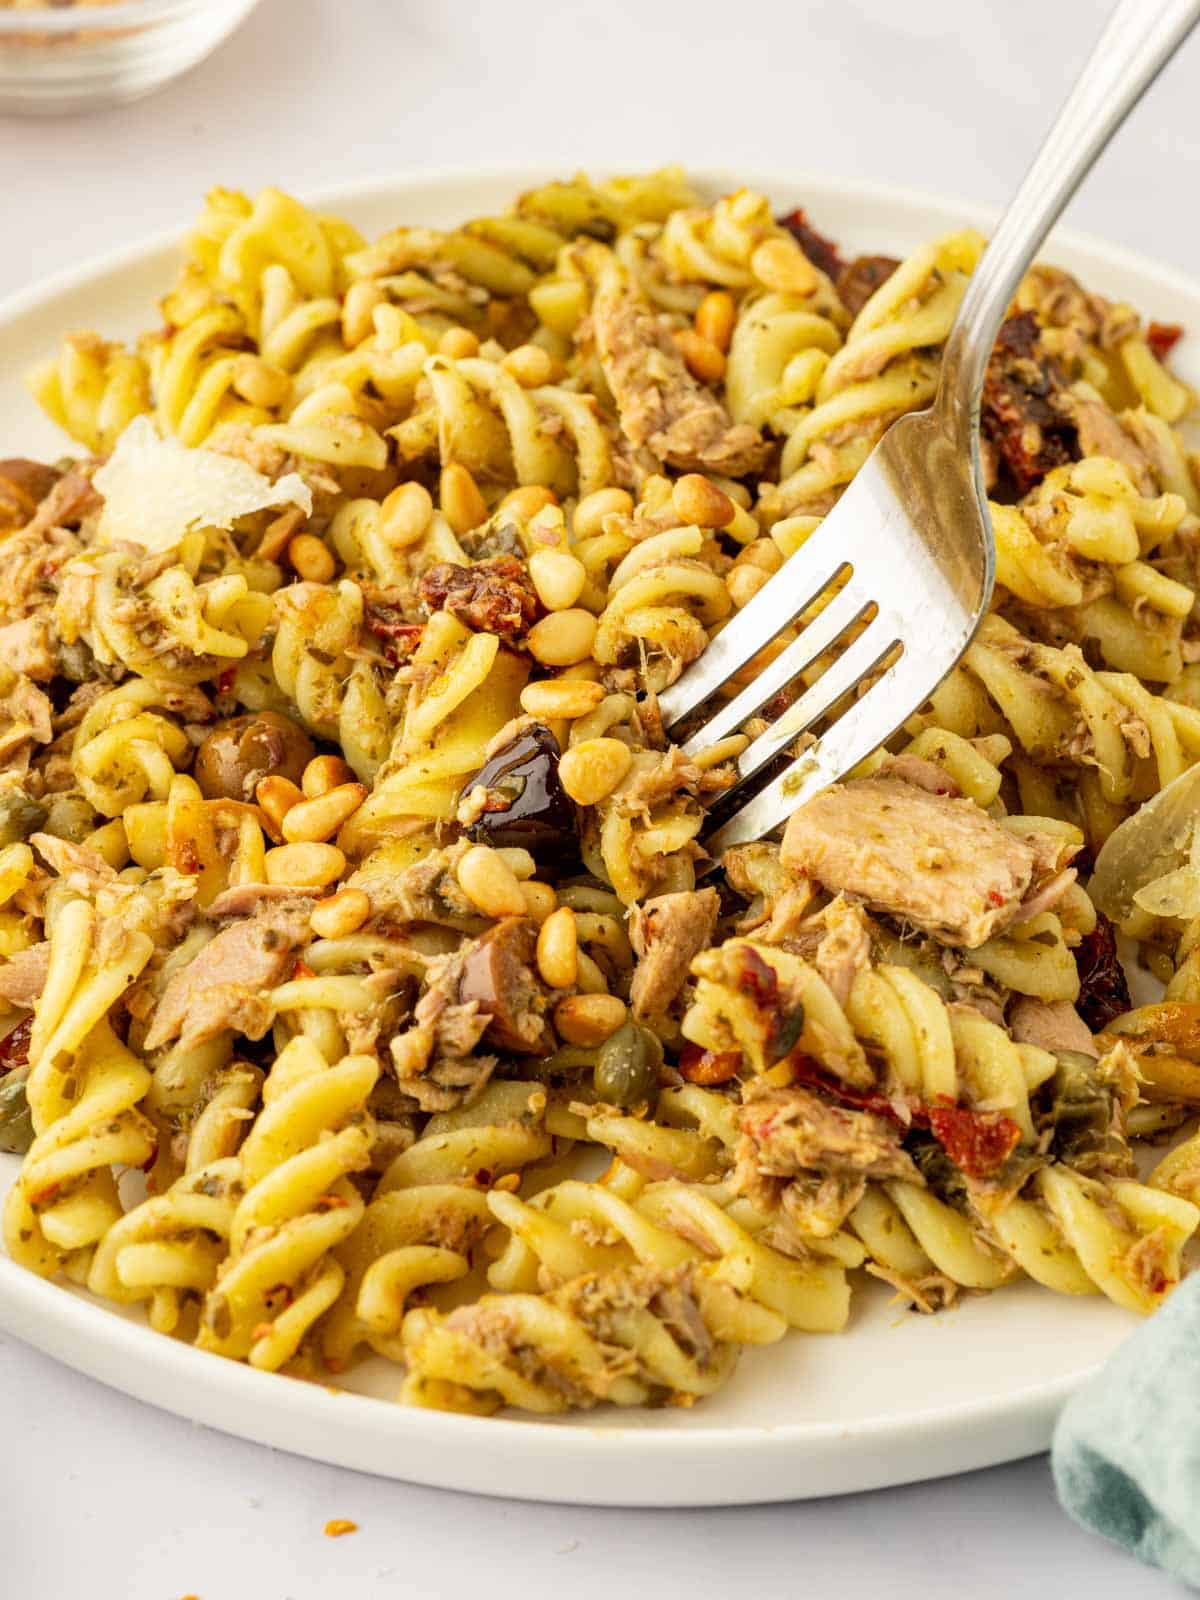 A fork pick up a bite of tuna pasta.